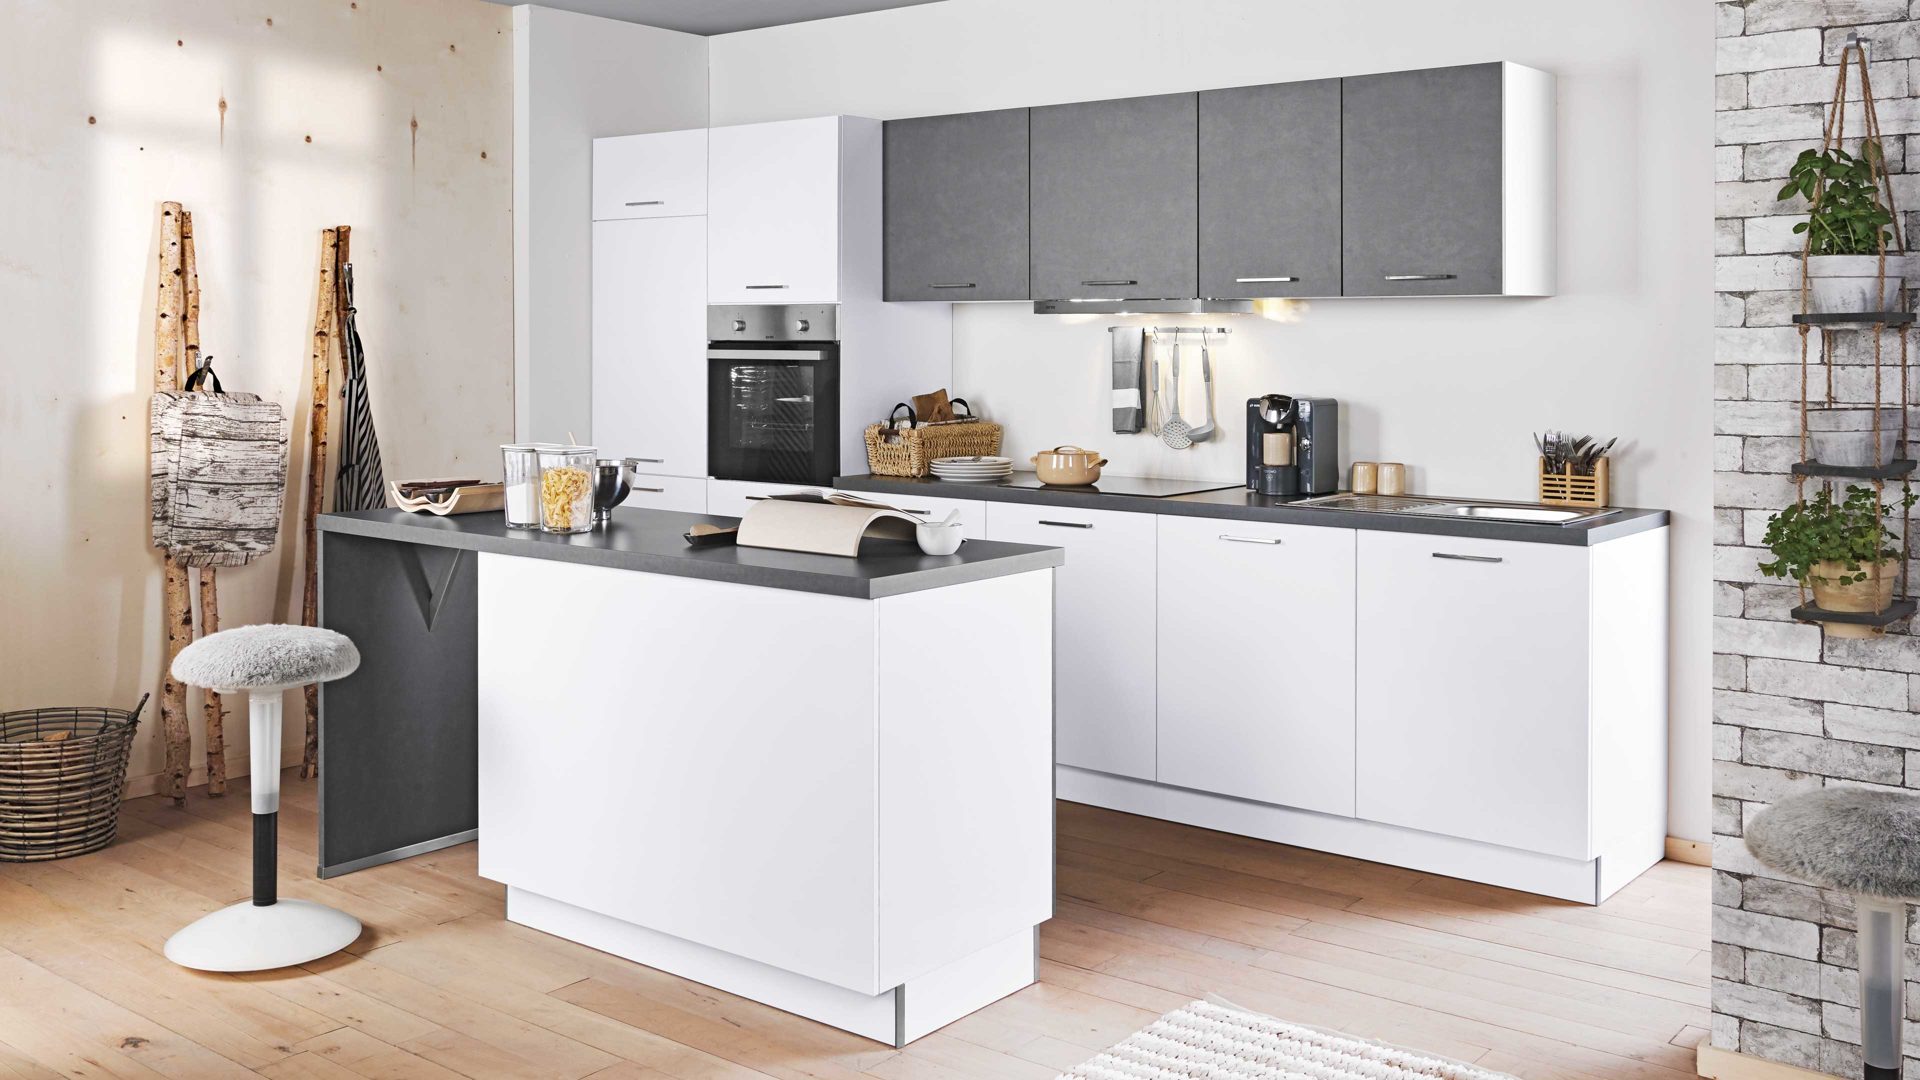 Einbauküche Express küchen aus Holz in Weiß EXPRESS KÜCHEN Einbauküche Clean mit IGNIS Einbaugeräten Mattweiß & Stahl Dunkel - zweizeilig